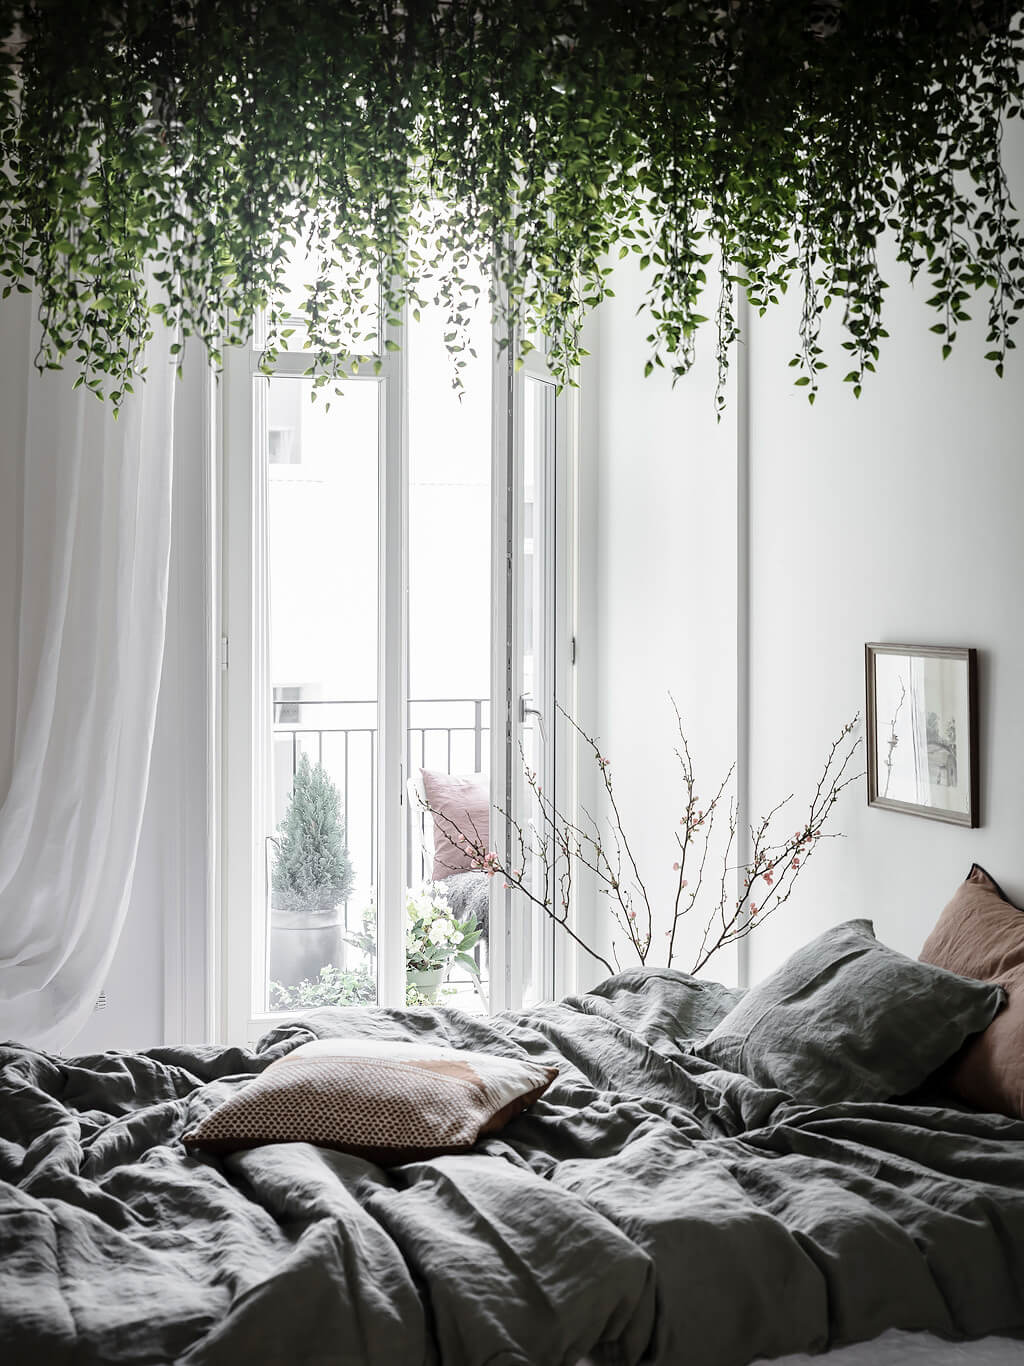 scandinavian apartment canopy plants nordroom13 A Scandi Apartment With A Canopy of Plants in the Bedroom